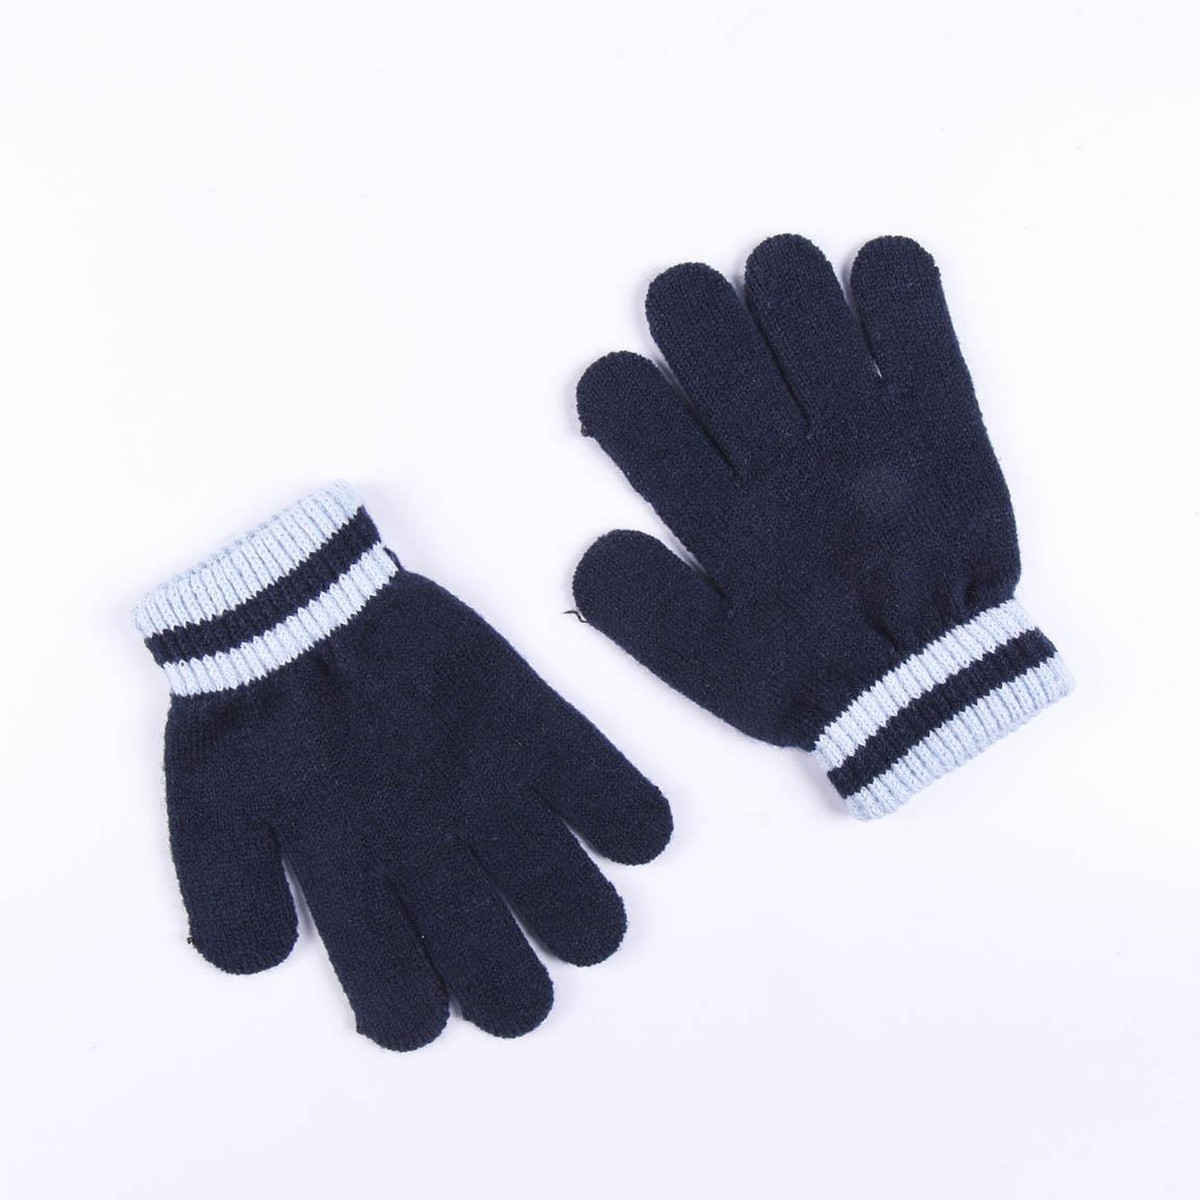 Czapki i rękawiczki Buzz Lightyear Niebieski (Jeden rozmiar)